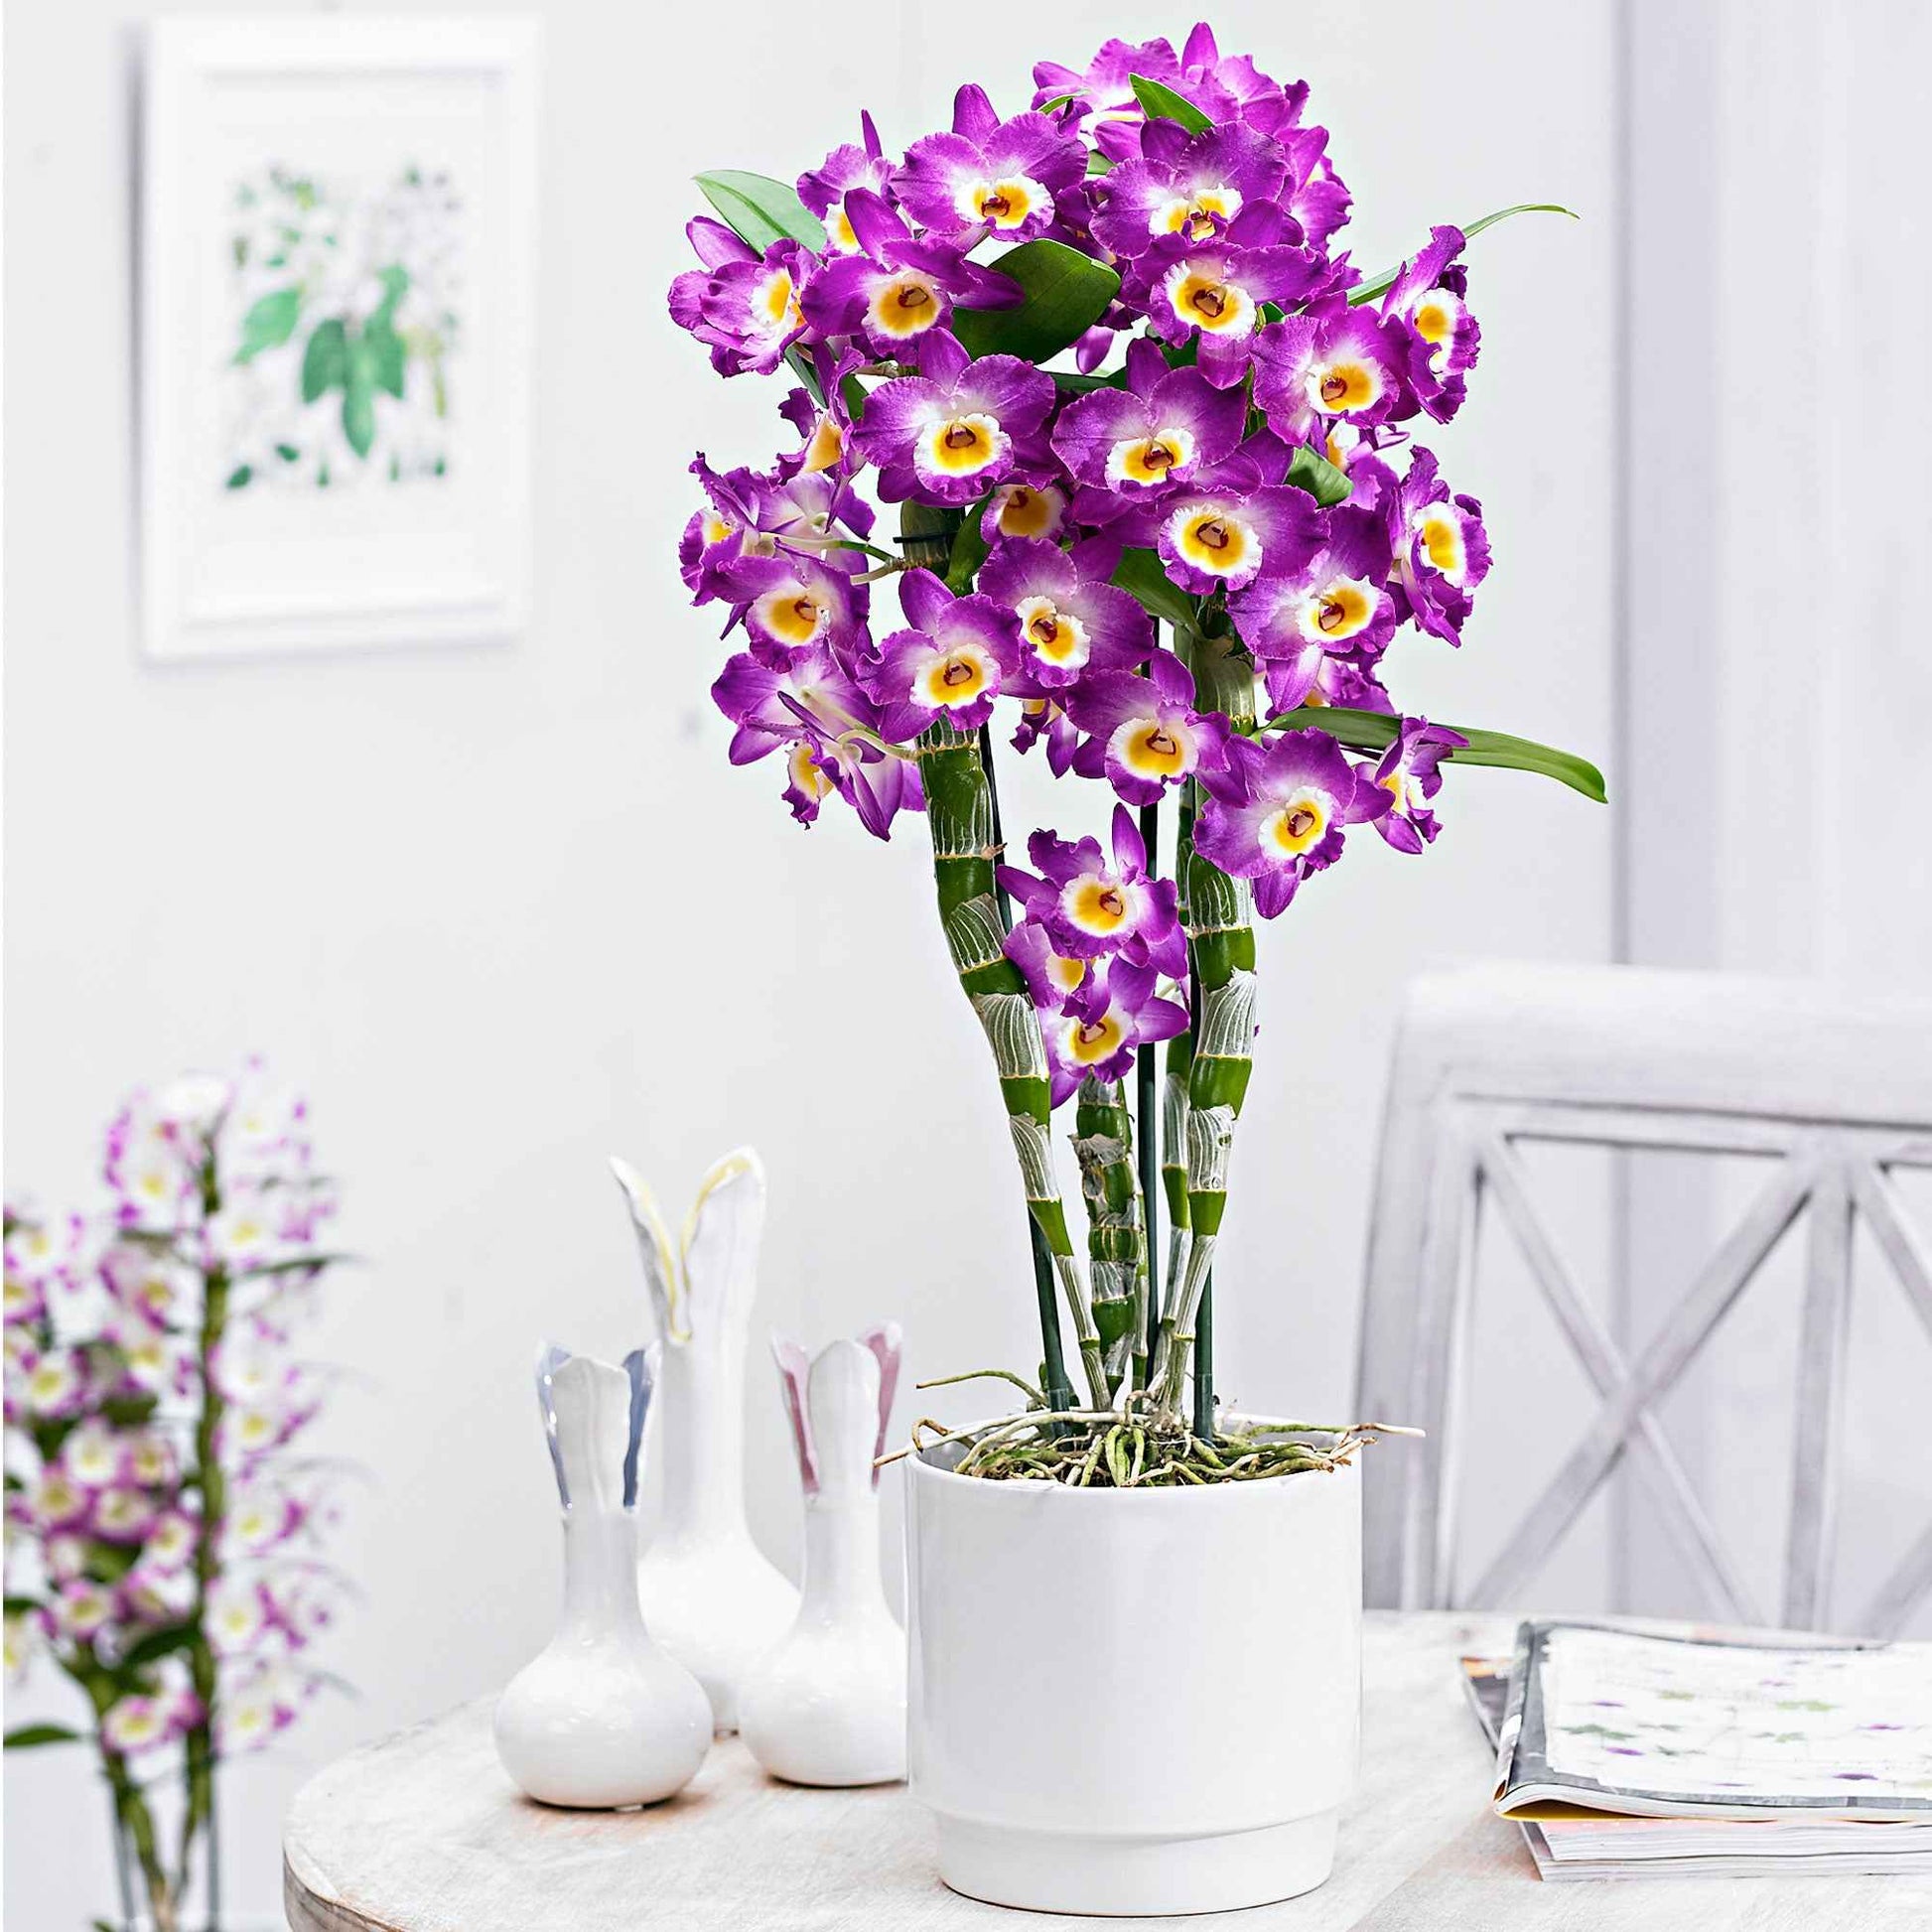 Orchidée Dendrobium 'Comet King Akatsuki' Violet-Blanc - Orchidée - Phalaenopsis